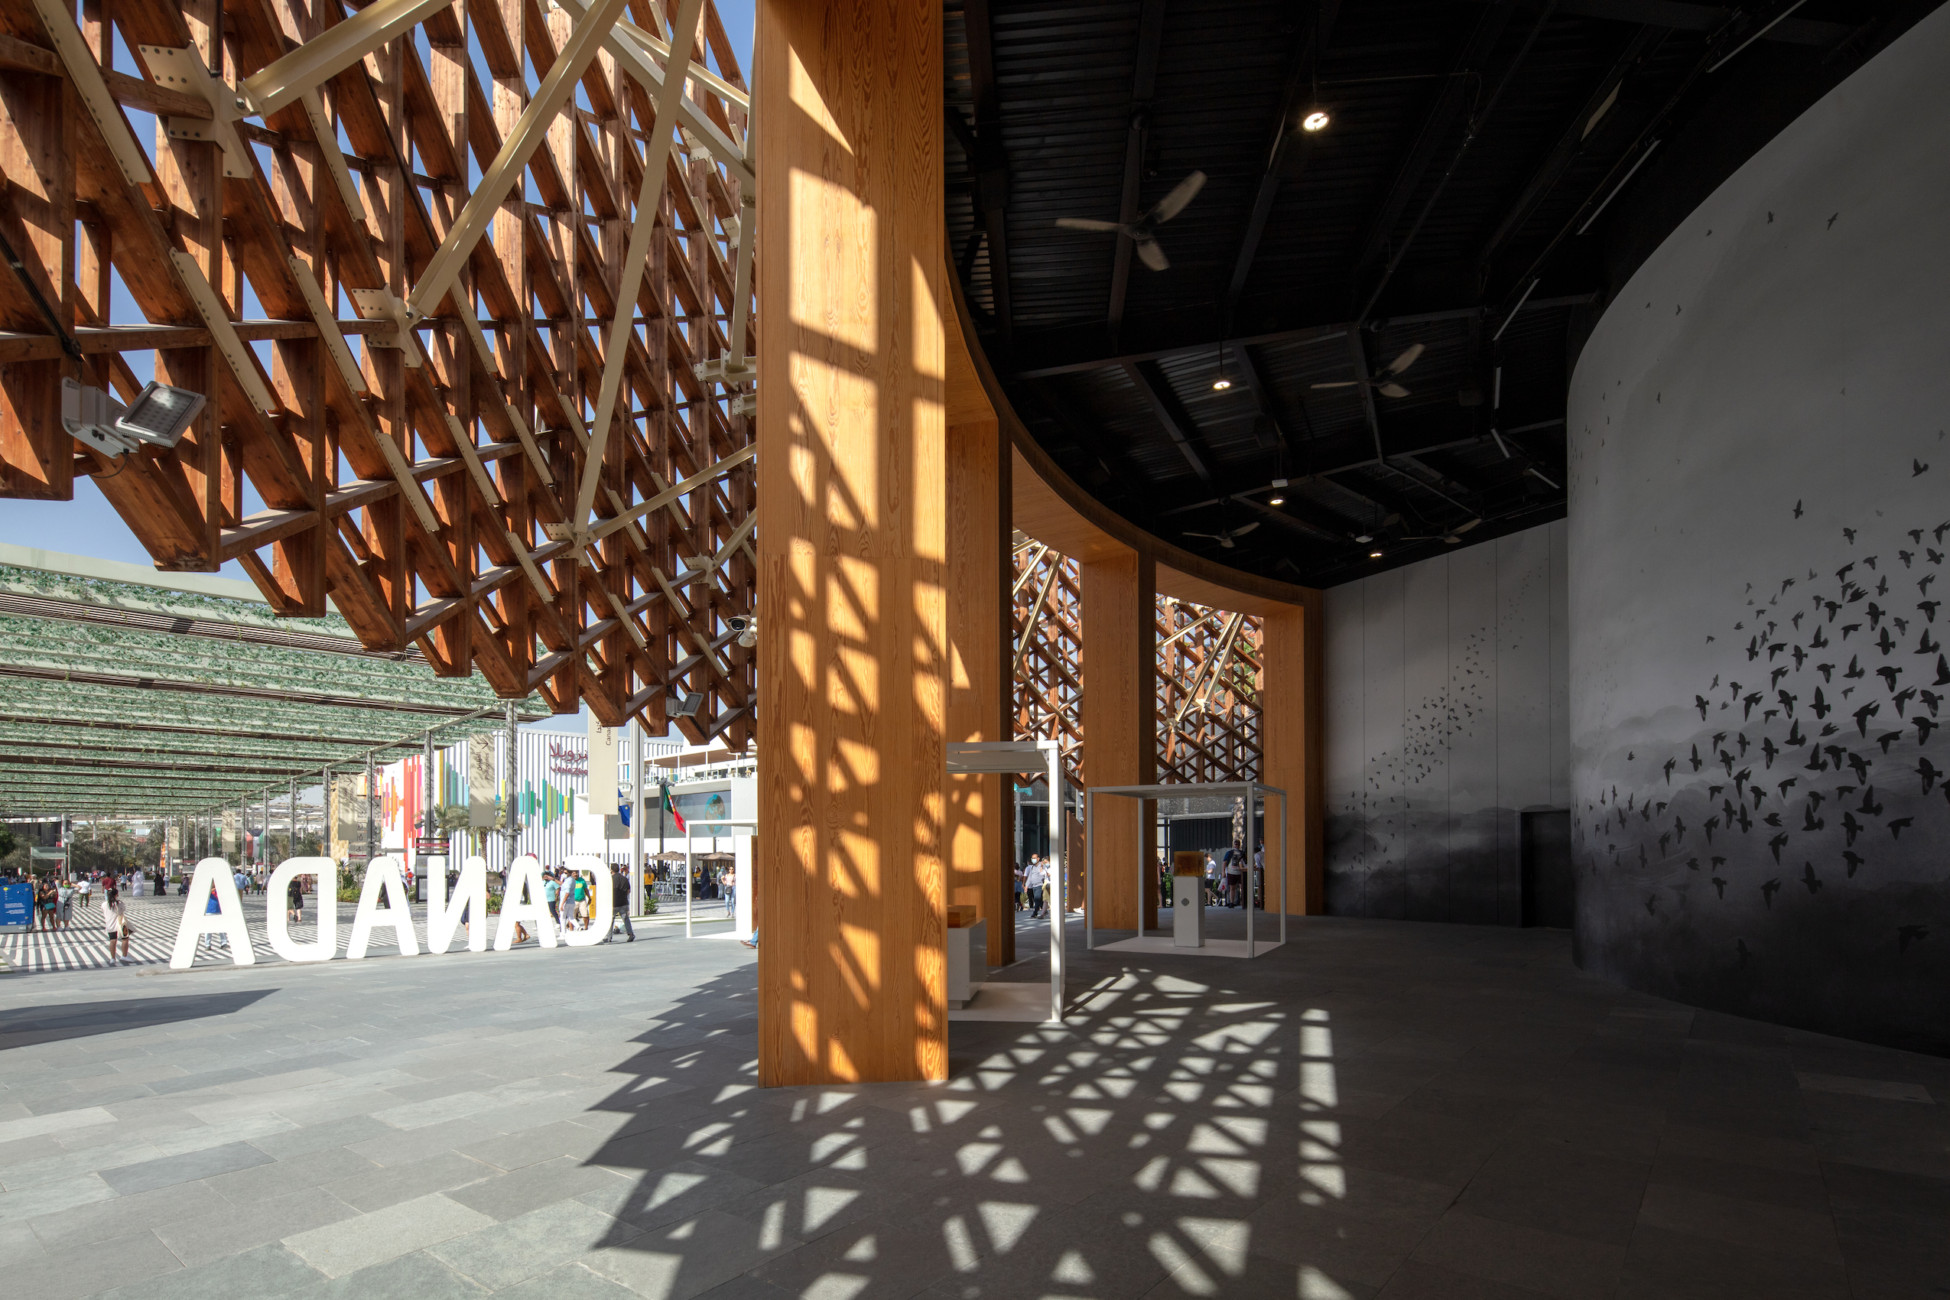 Moriyama Teshima architecture architect Canada Pavilion Expo Dubai UAE festival international timber design building